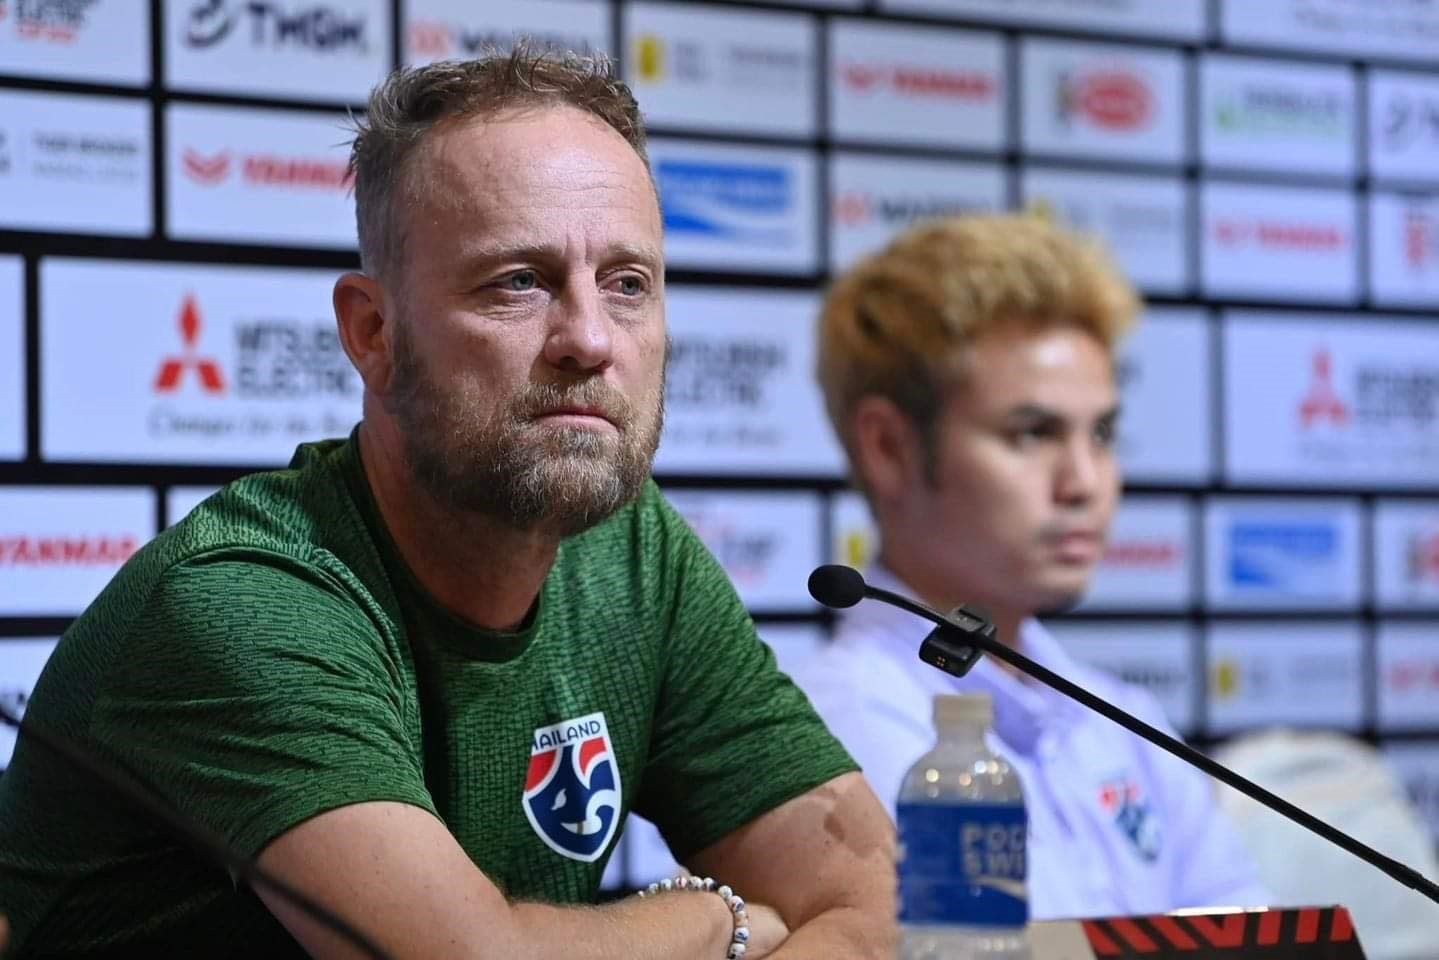 Huấn luyện viên Polking không vội tiết lộ đội hình Thái Lan trong trận chung kết lượt về AFF Cup 2022. Ảnh: FAT